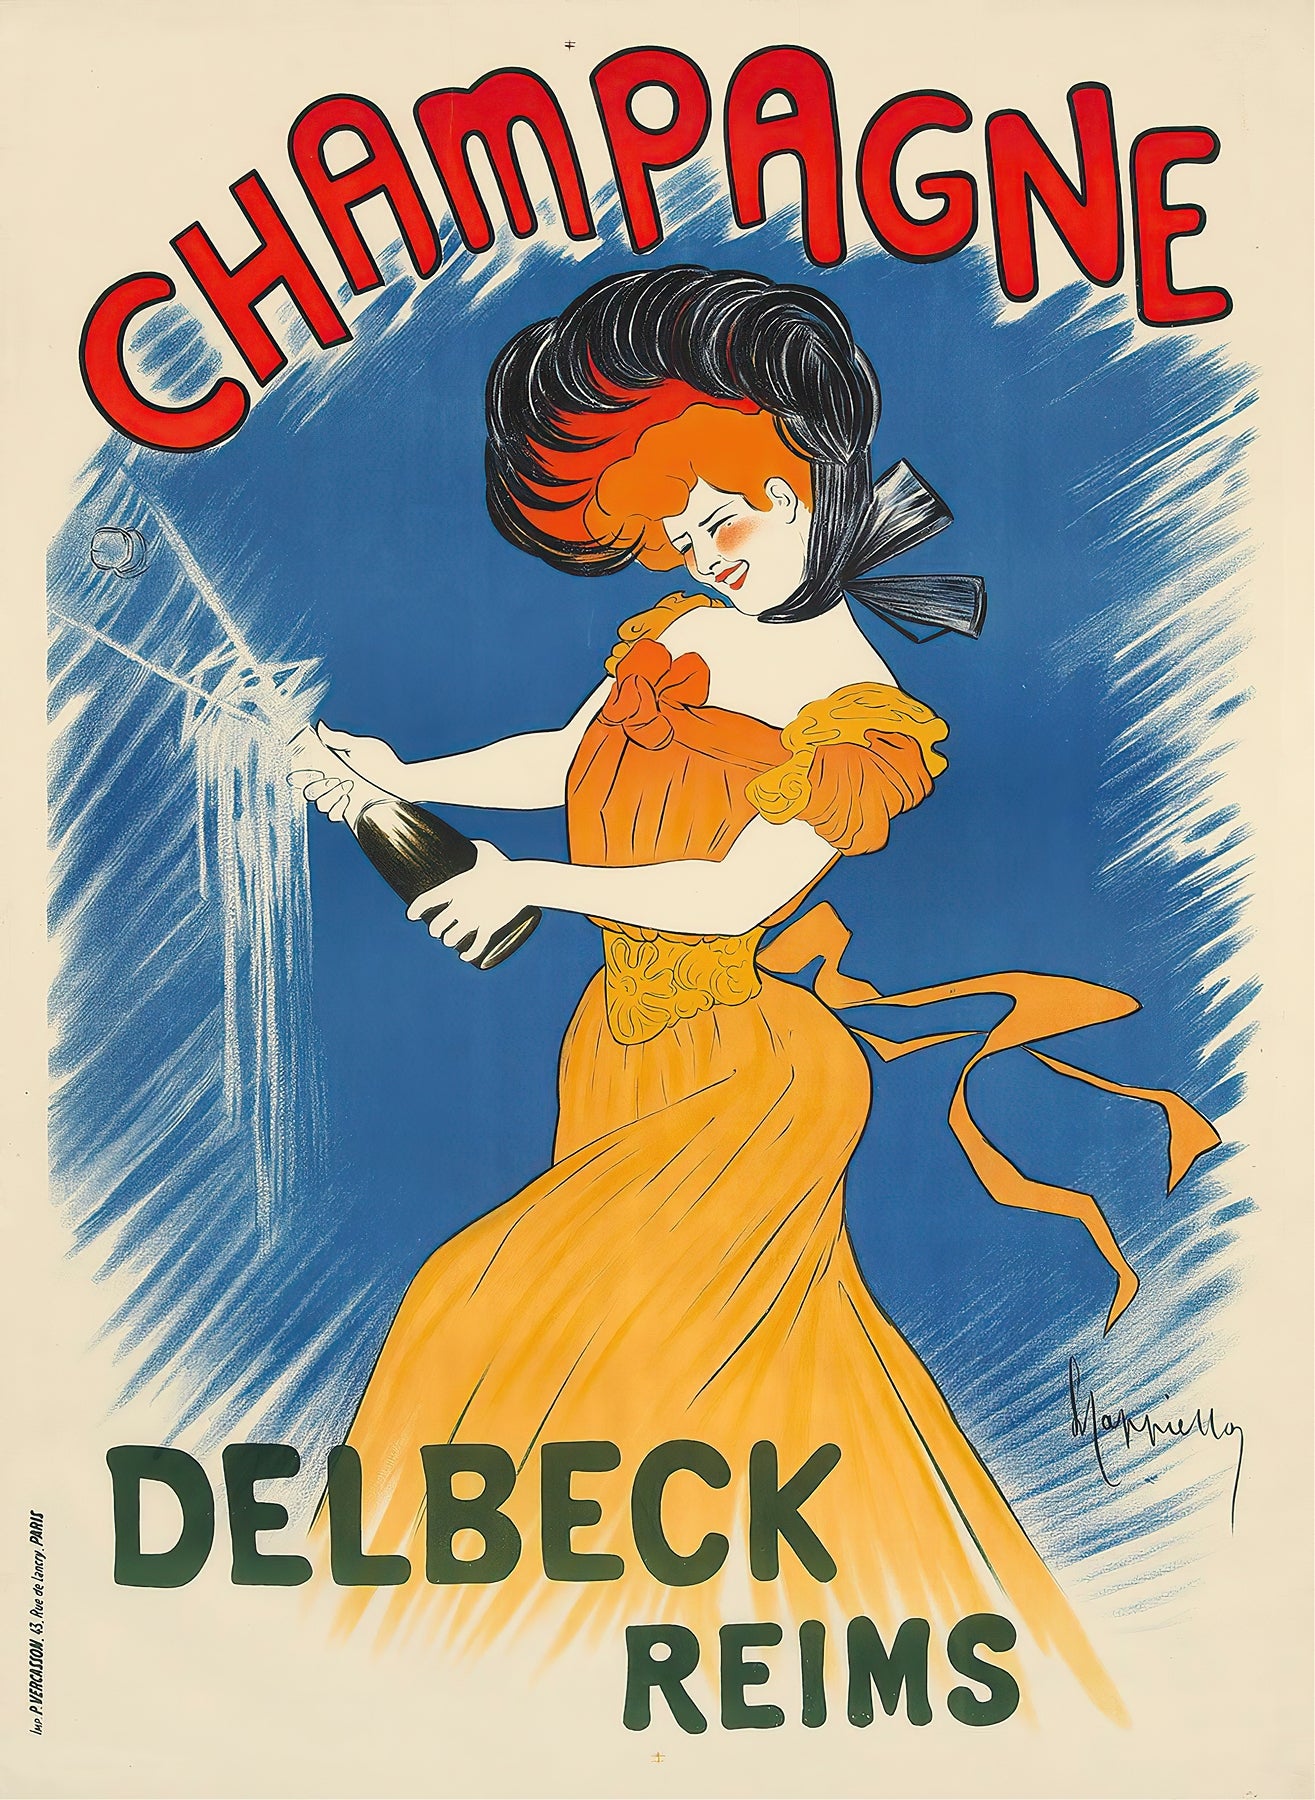 Champagne Delbeck (1900s) | Vintage Champagne posters | Leonetto Cappiello Posters, Prints, & Visual Artwork The Trumpet Shop   